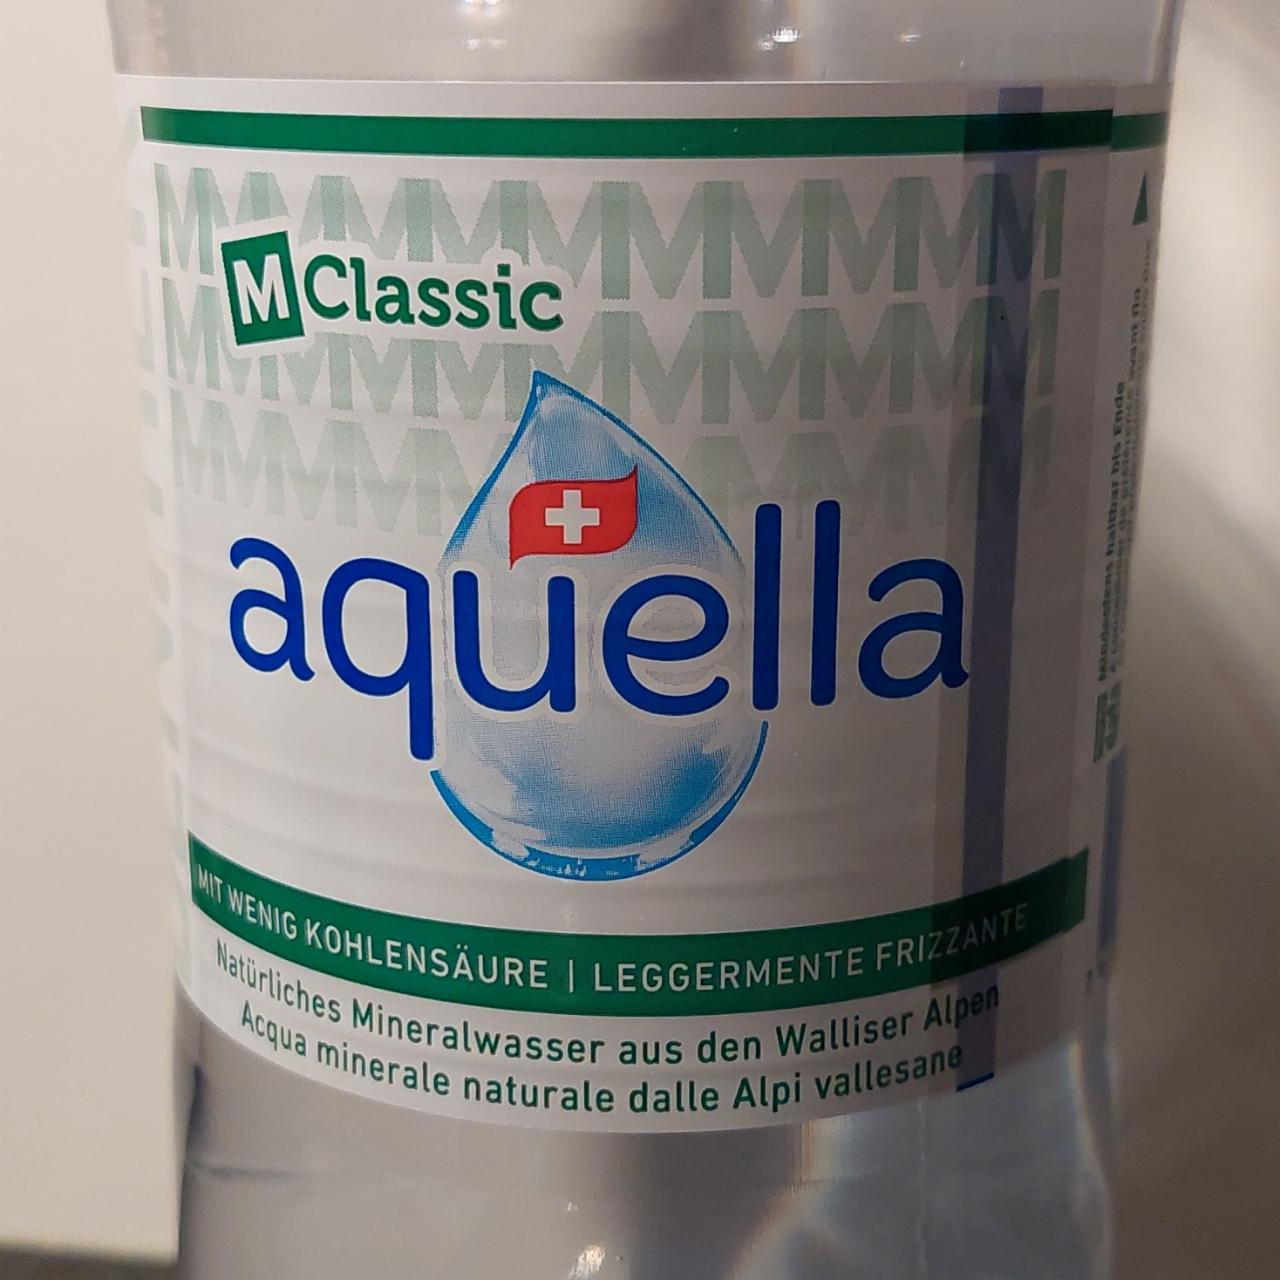 Фото - Натуральная минеральная вода Aquella Mirgos M Classic.